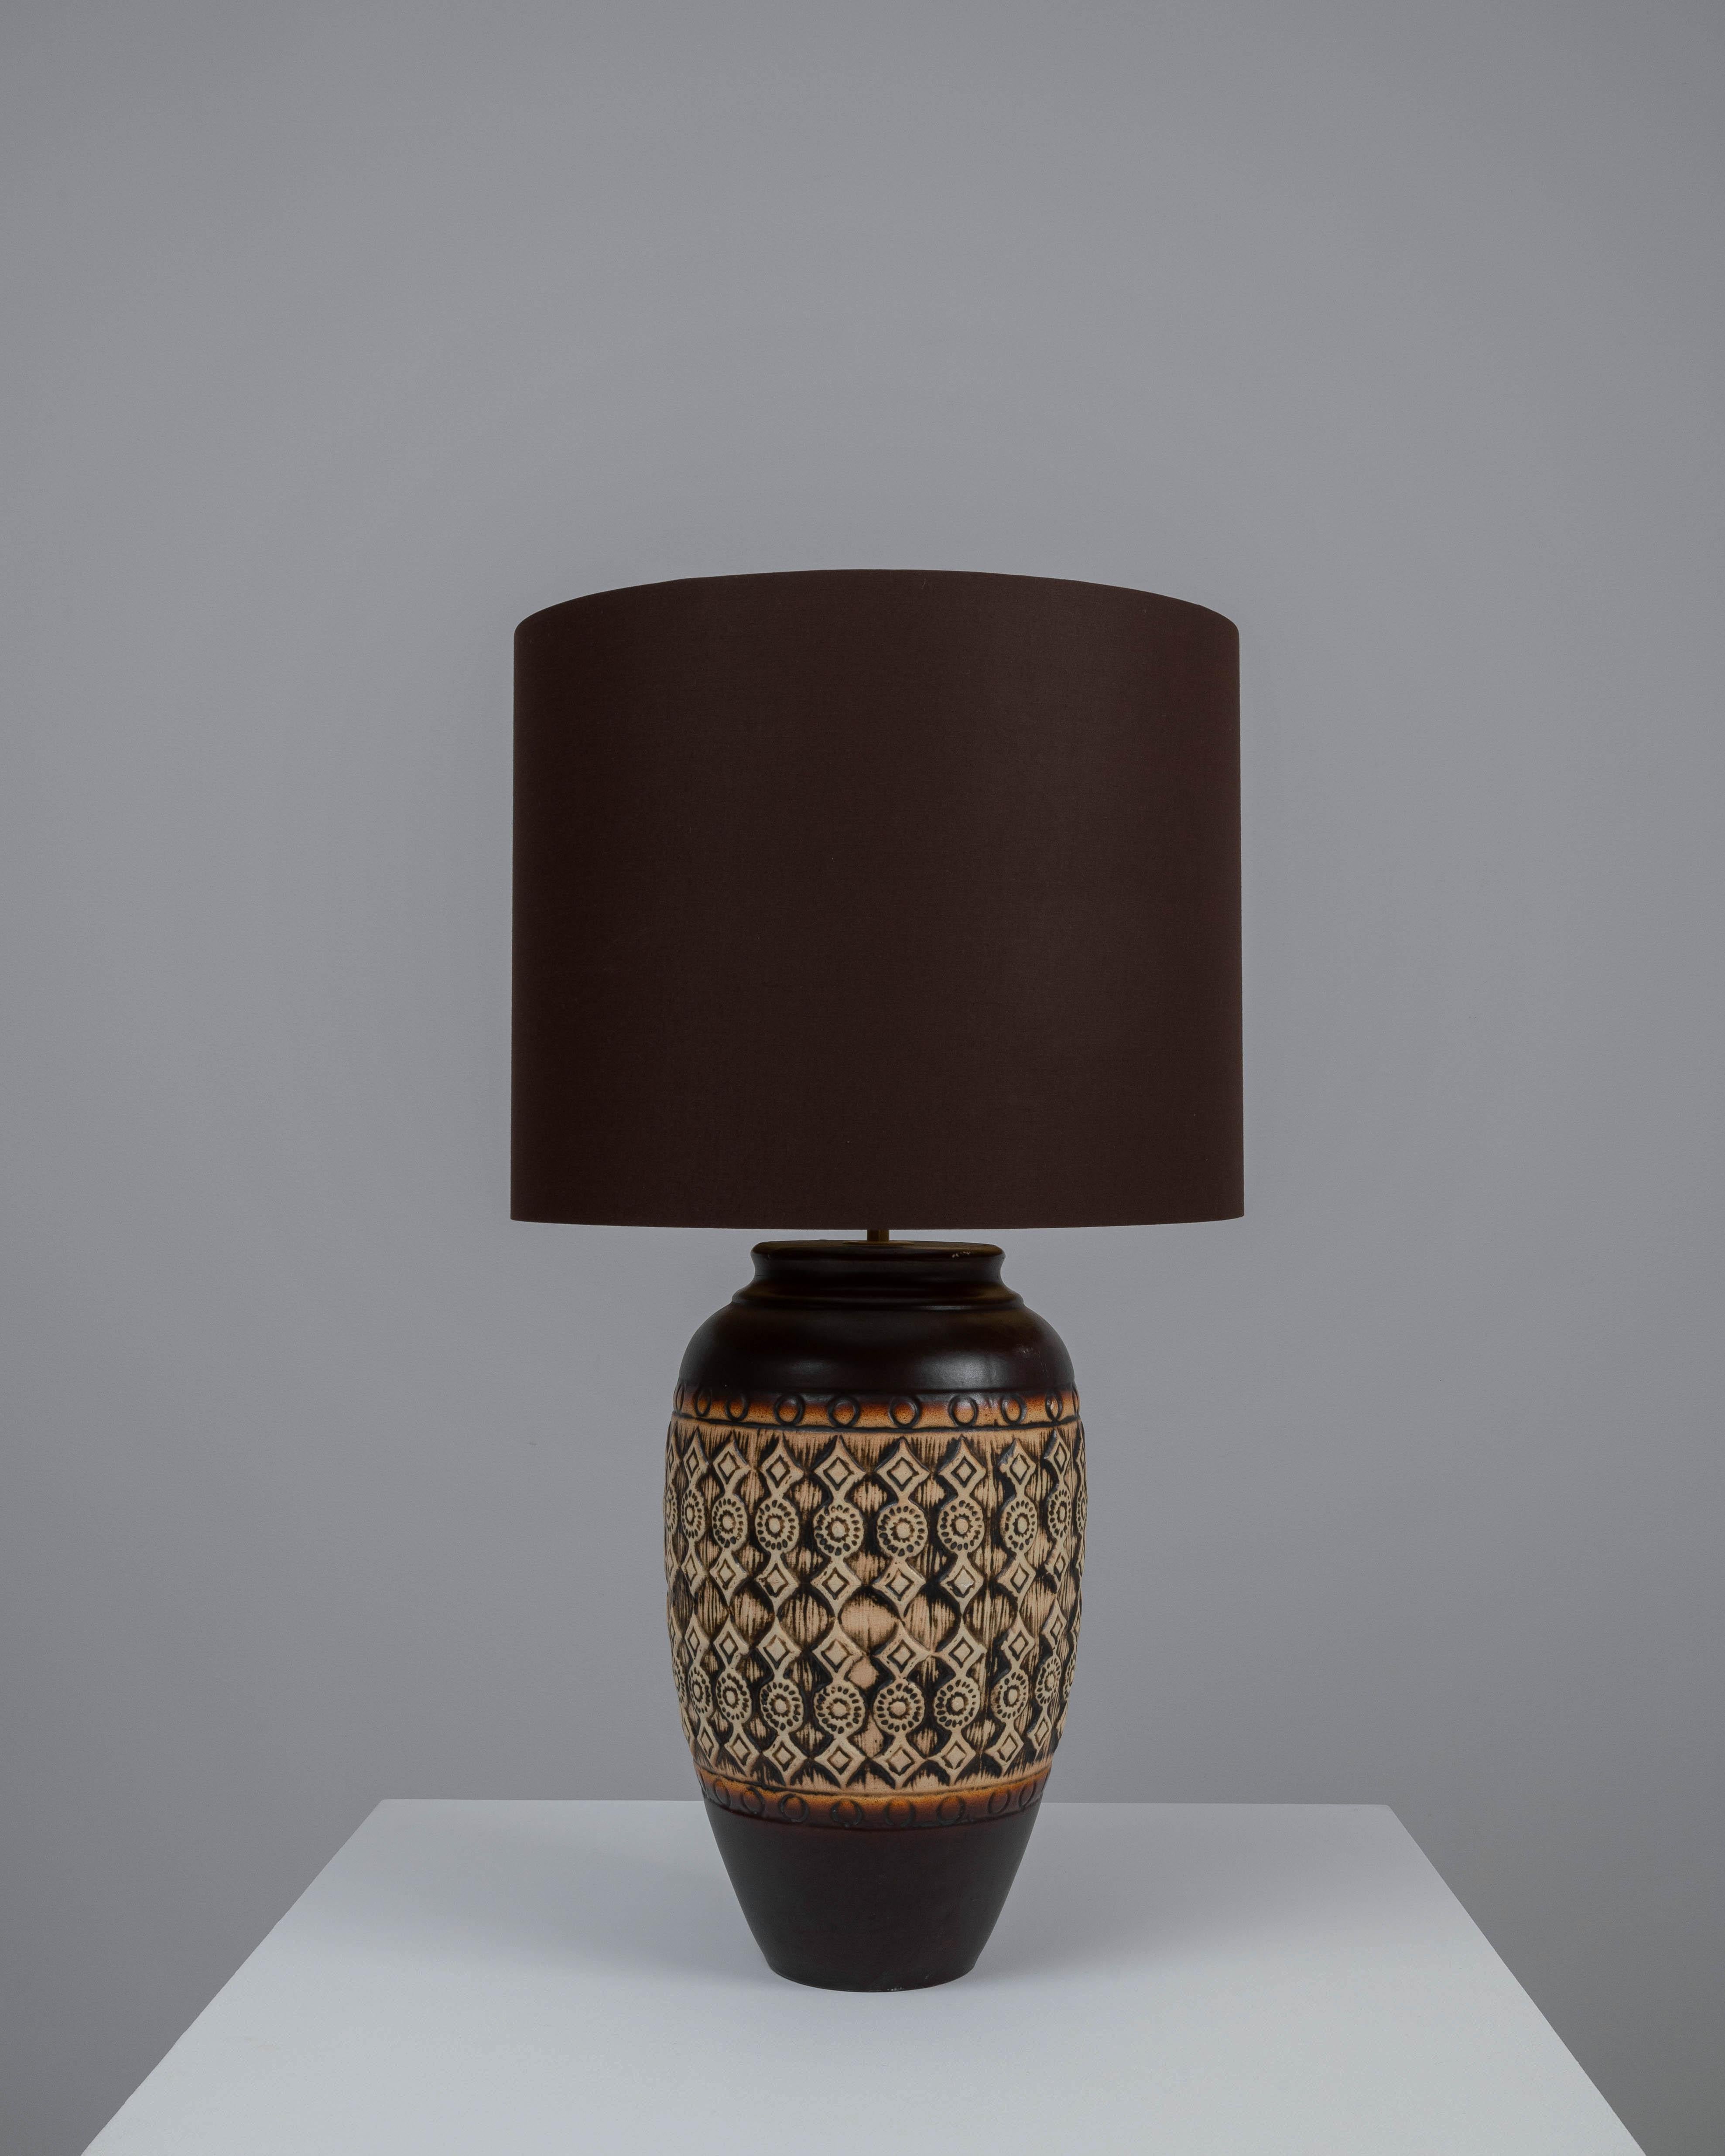 Cette lampe de table en céramique allemande du XXe siècle est une célébration des motifs et des textures. La base de la lampe est ornée d'un motif complexe d'inspiration tribale, gravé dans la céramique et animé d'une glaçure chaude et terreuse qui